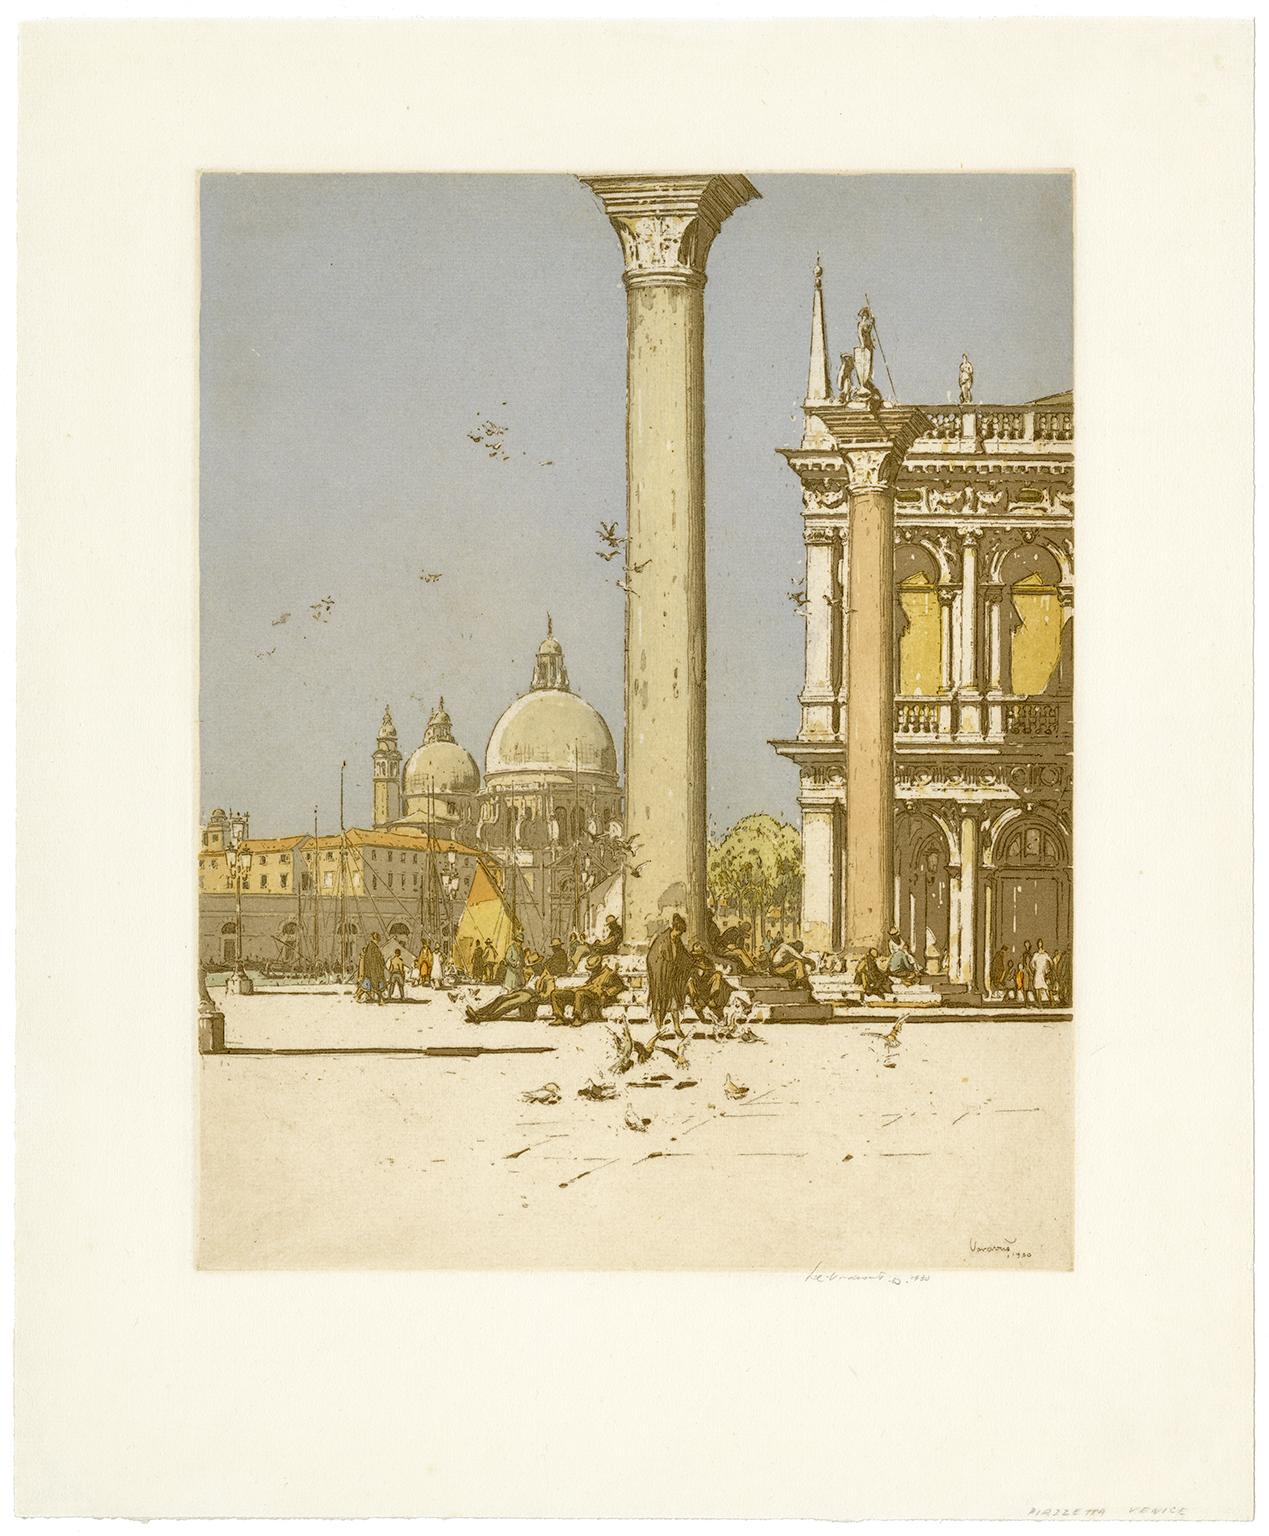 Piazzetta, Venise - Print de Jan C. Vondrous